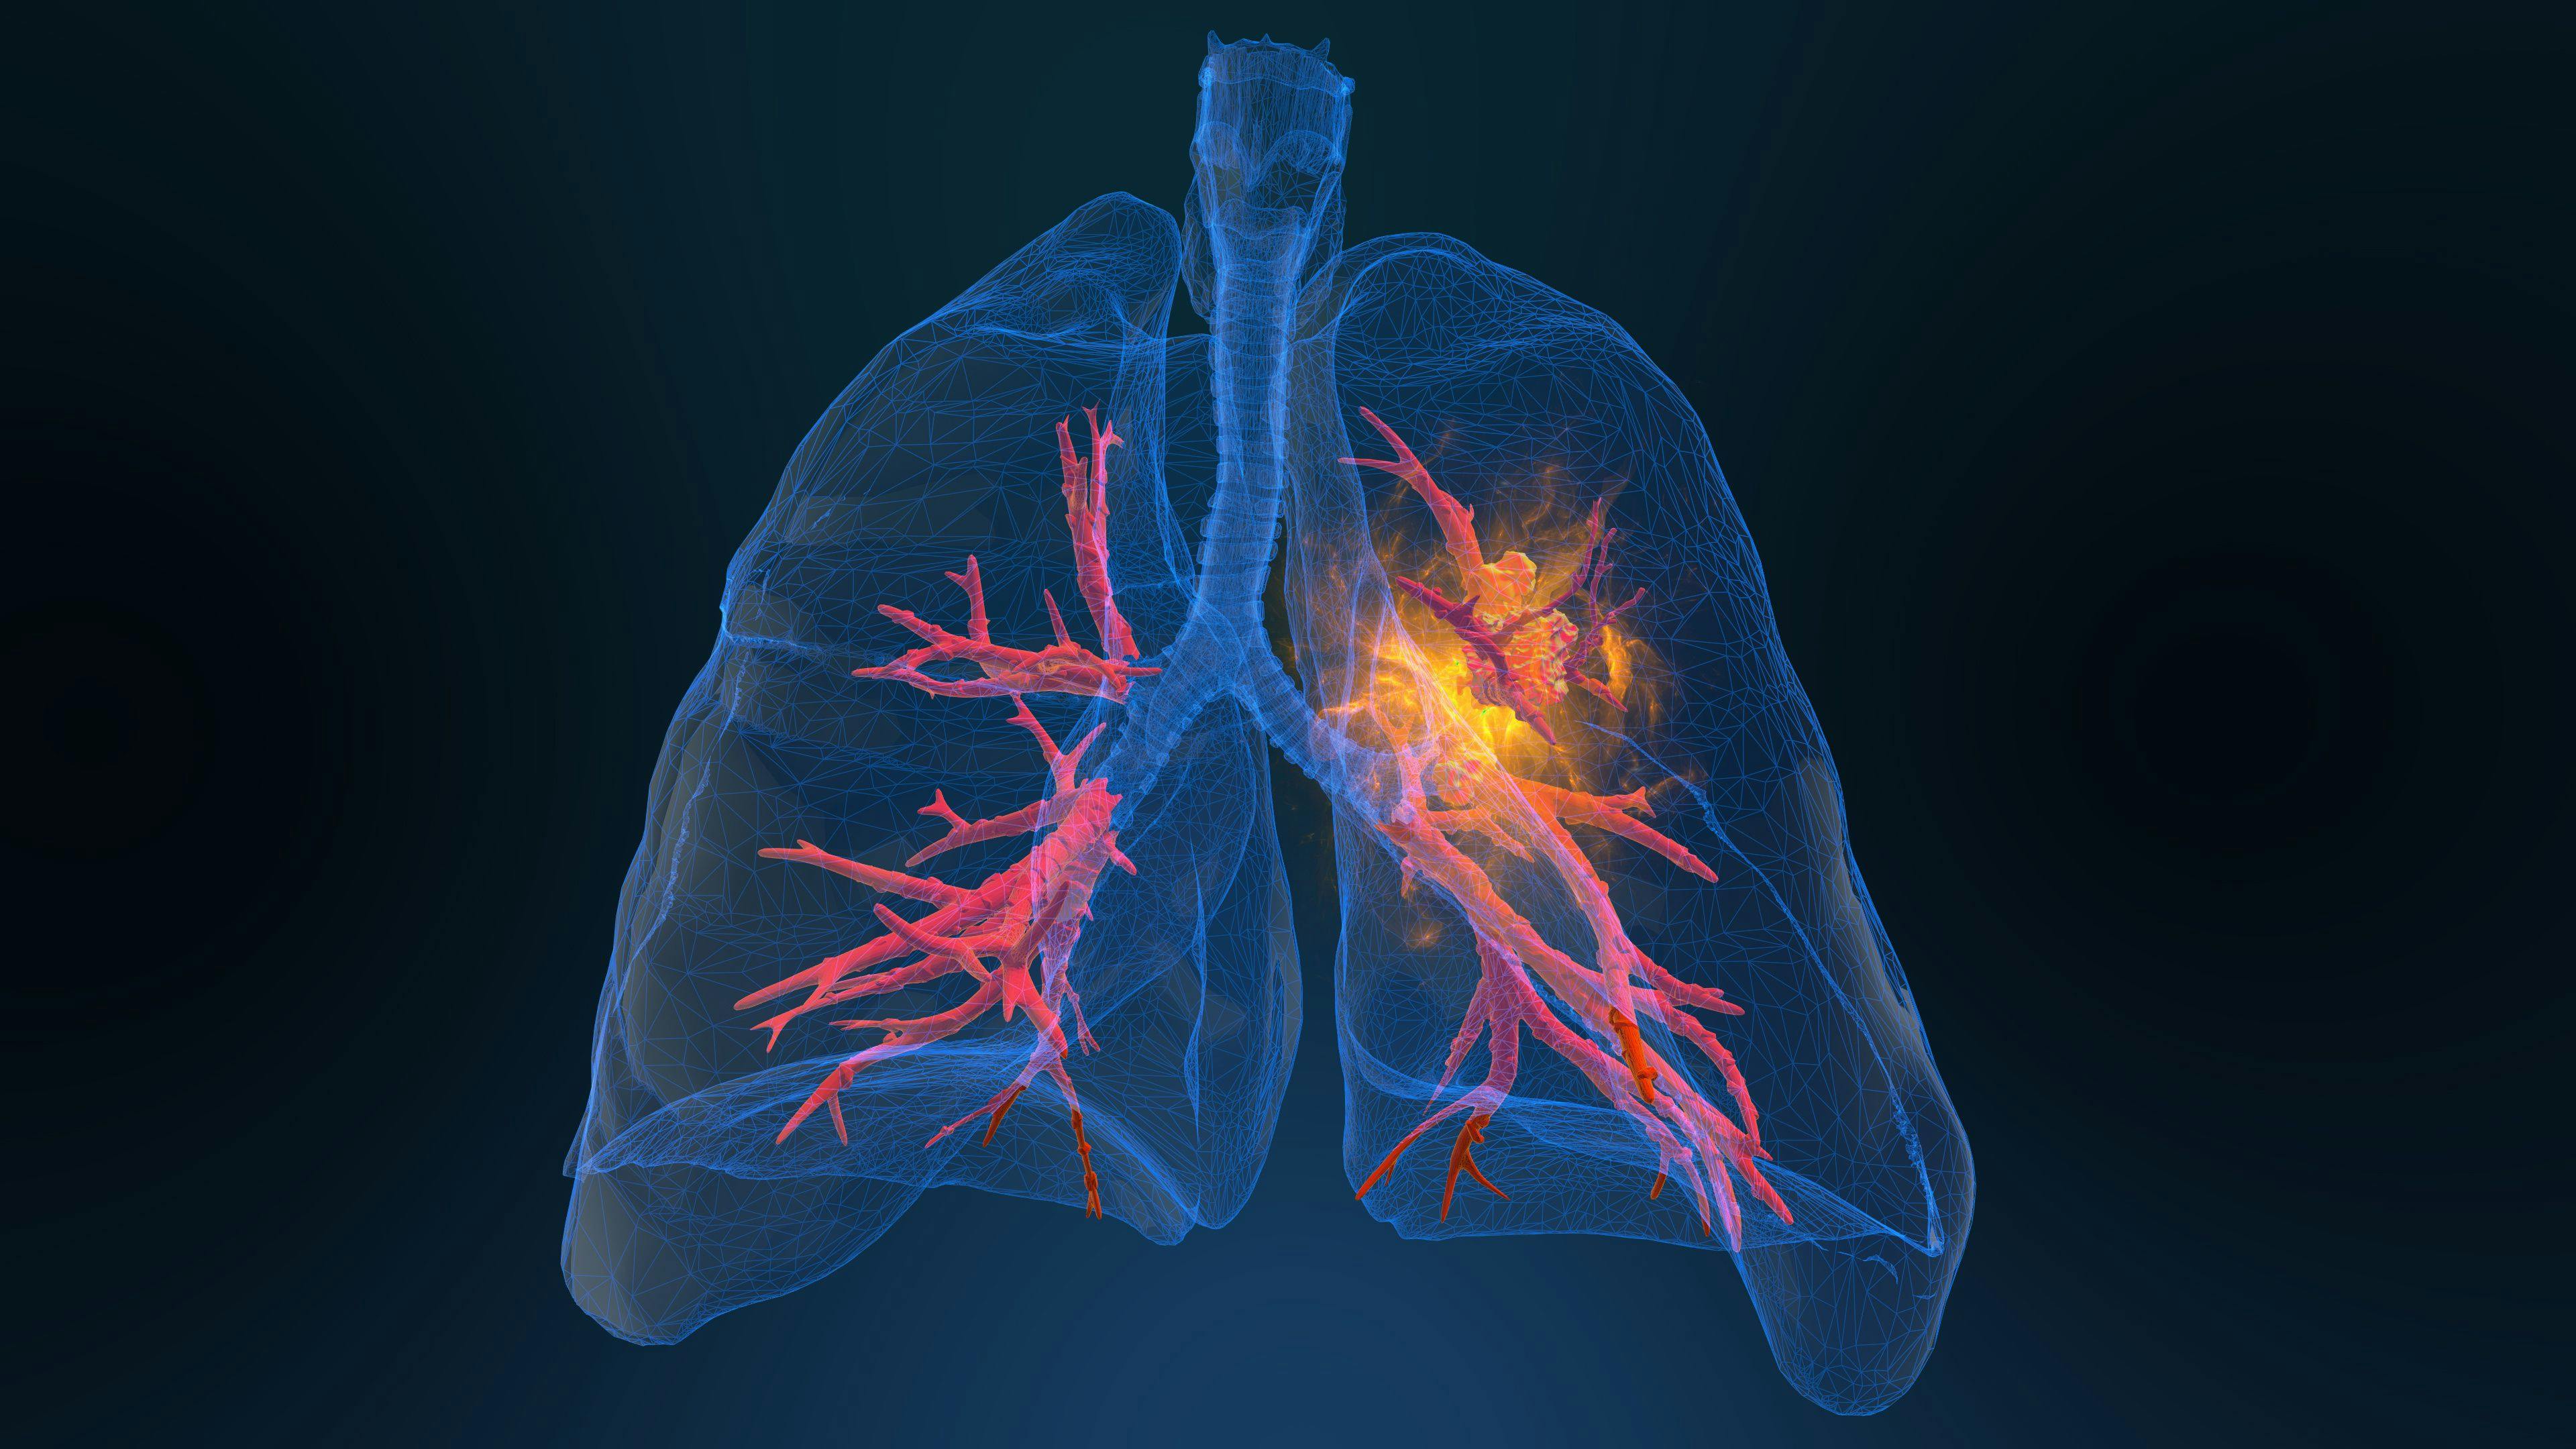 3D rendered illustration of lung cancer: ©appledesign - stock.adobe.com